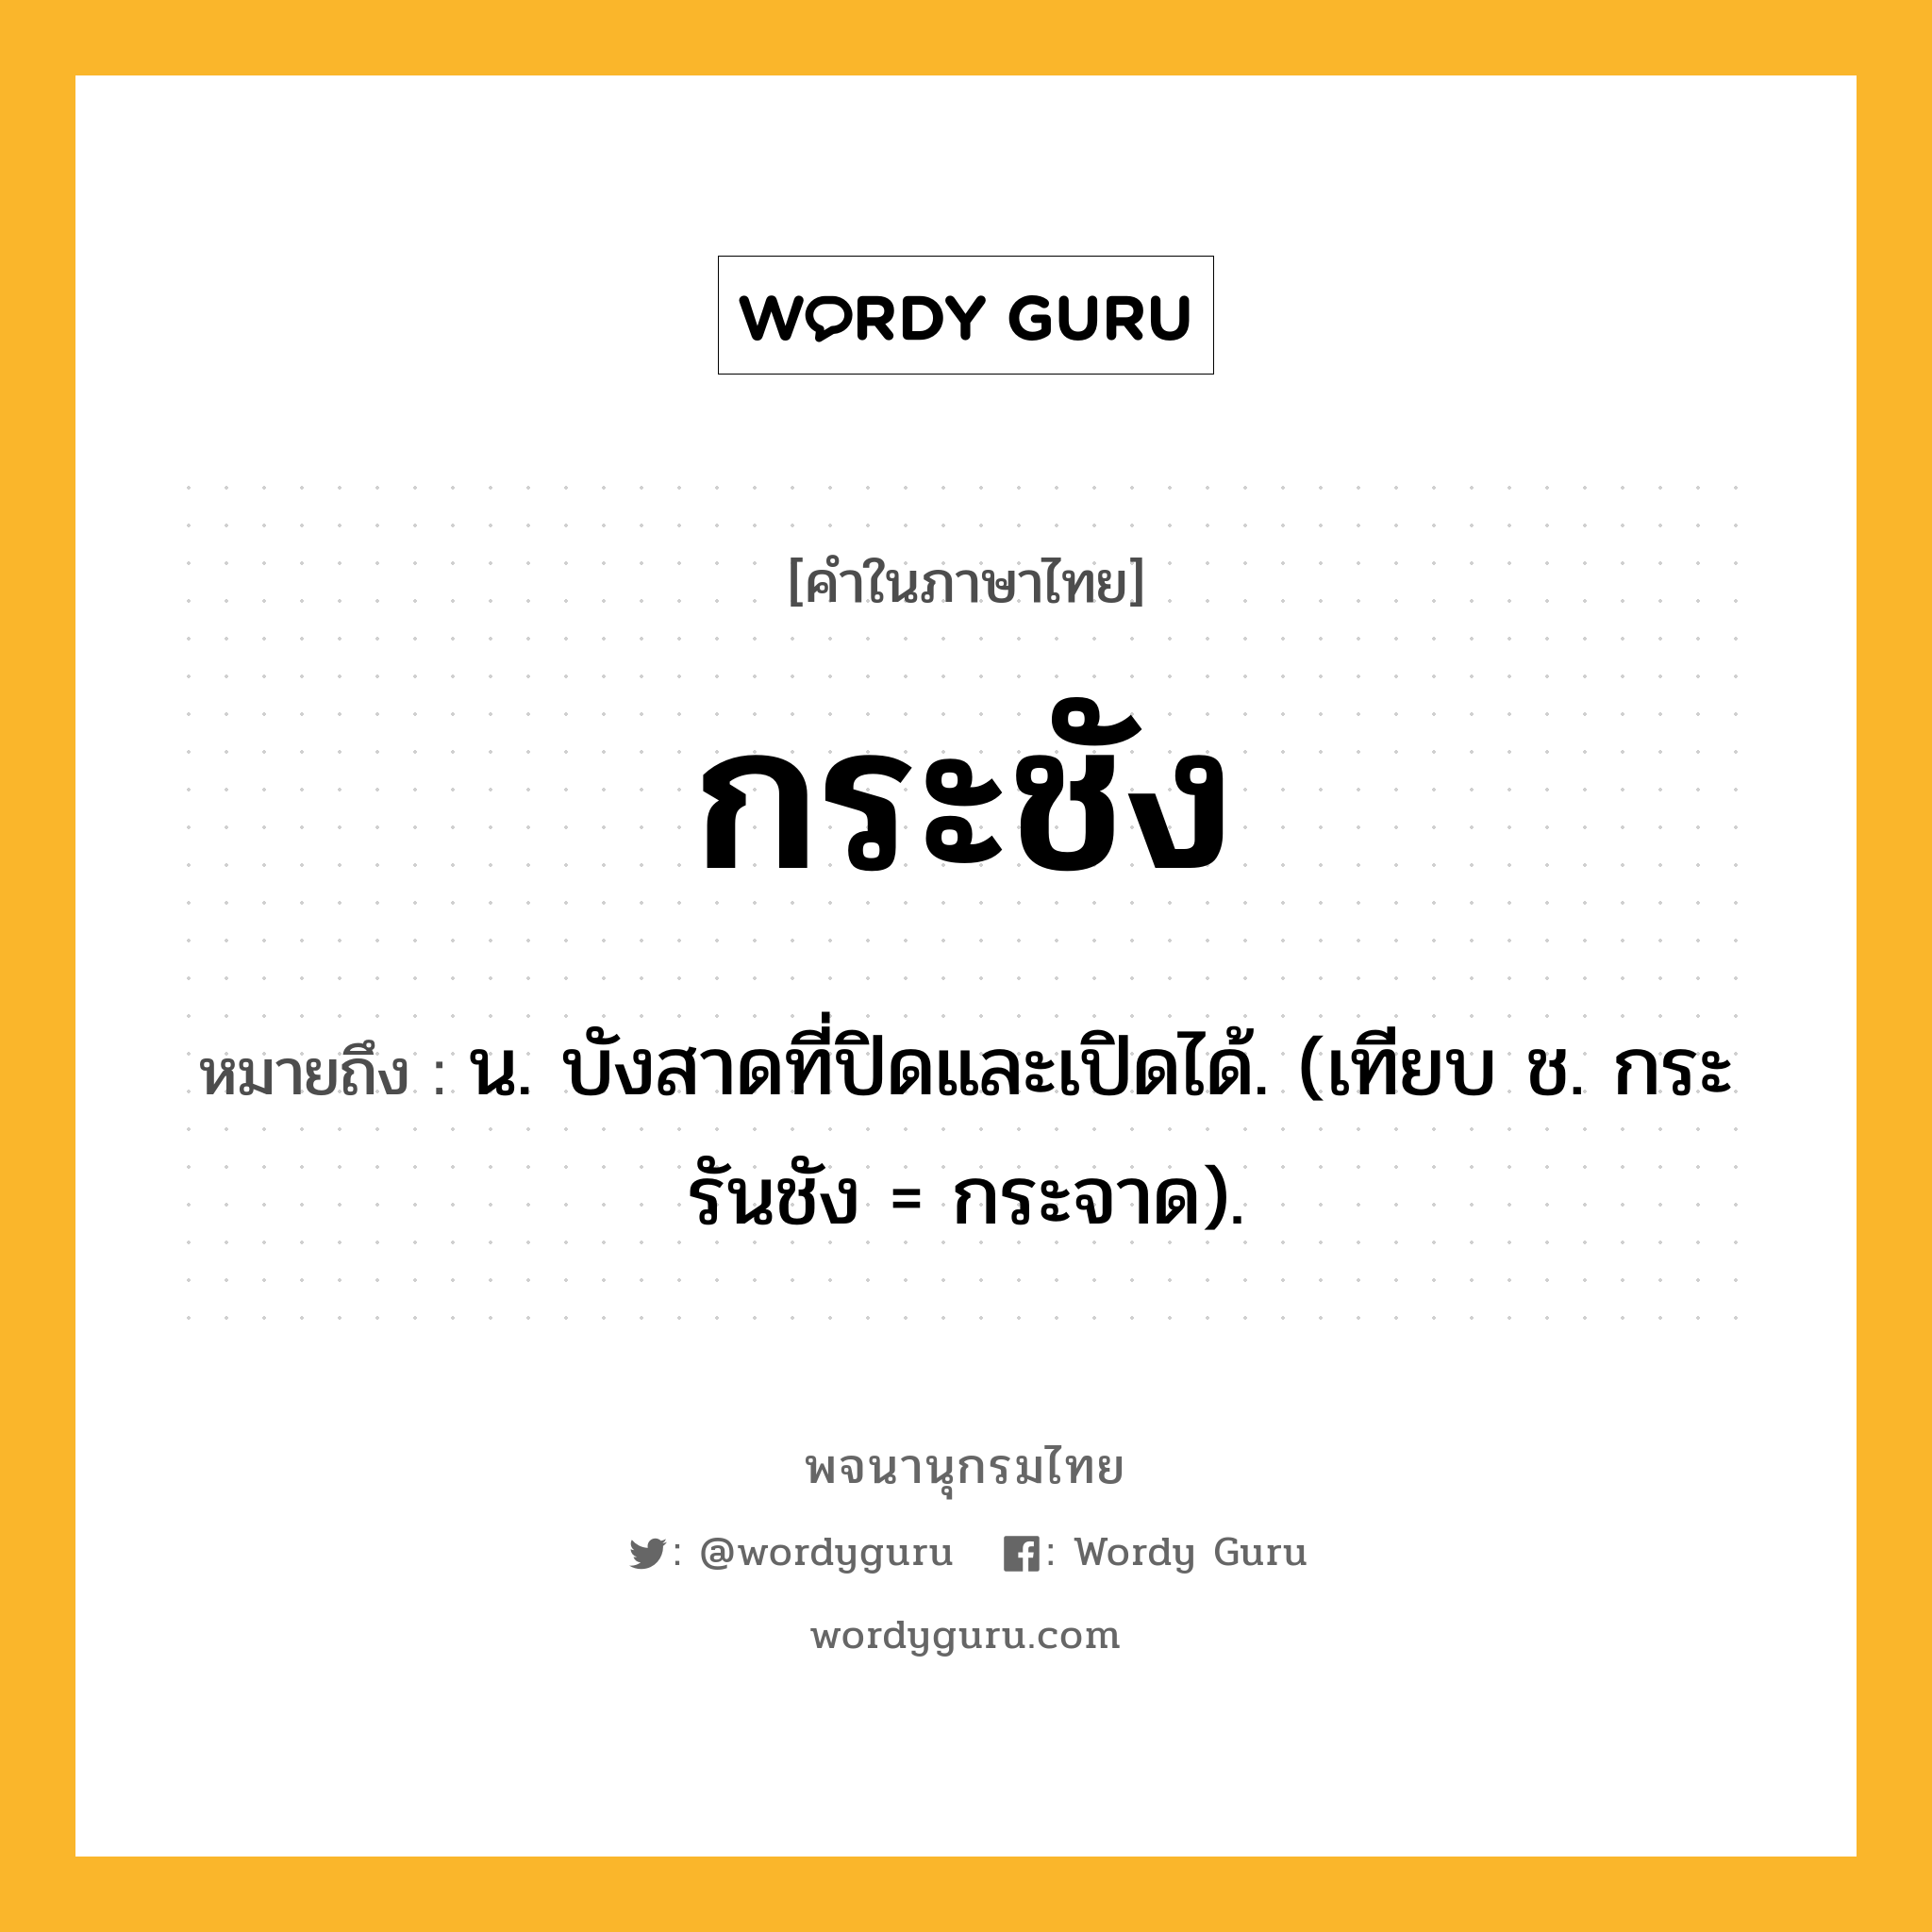 กระชัง ความหมาย หมายถึงอะไร?, คำในภาษาไทย กระชัง หมายถึง น. บังสาดที่ปิดและเปิดได้. (เทียบ ช. กระรันชัง = กระจาด).